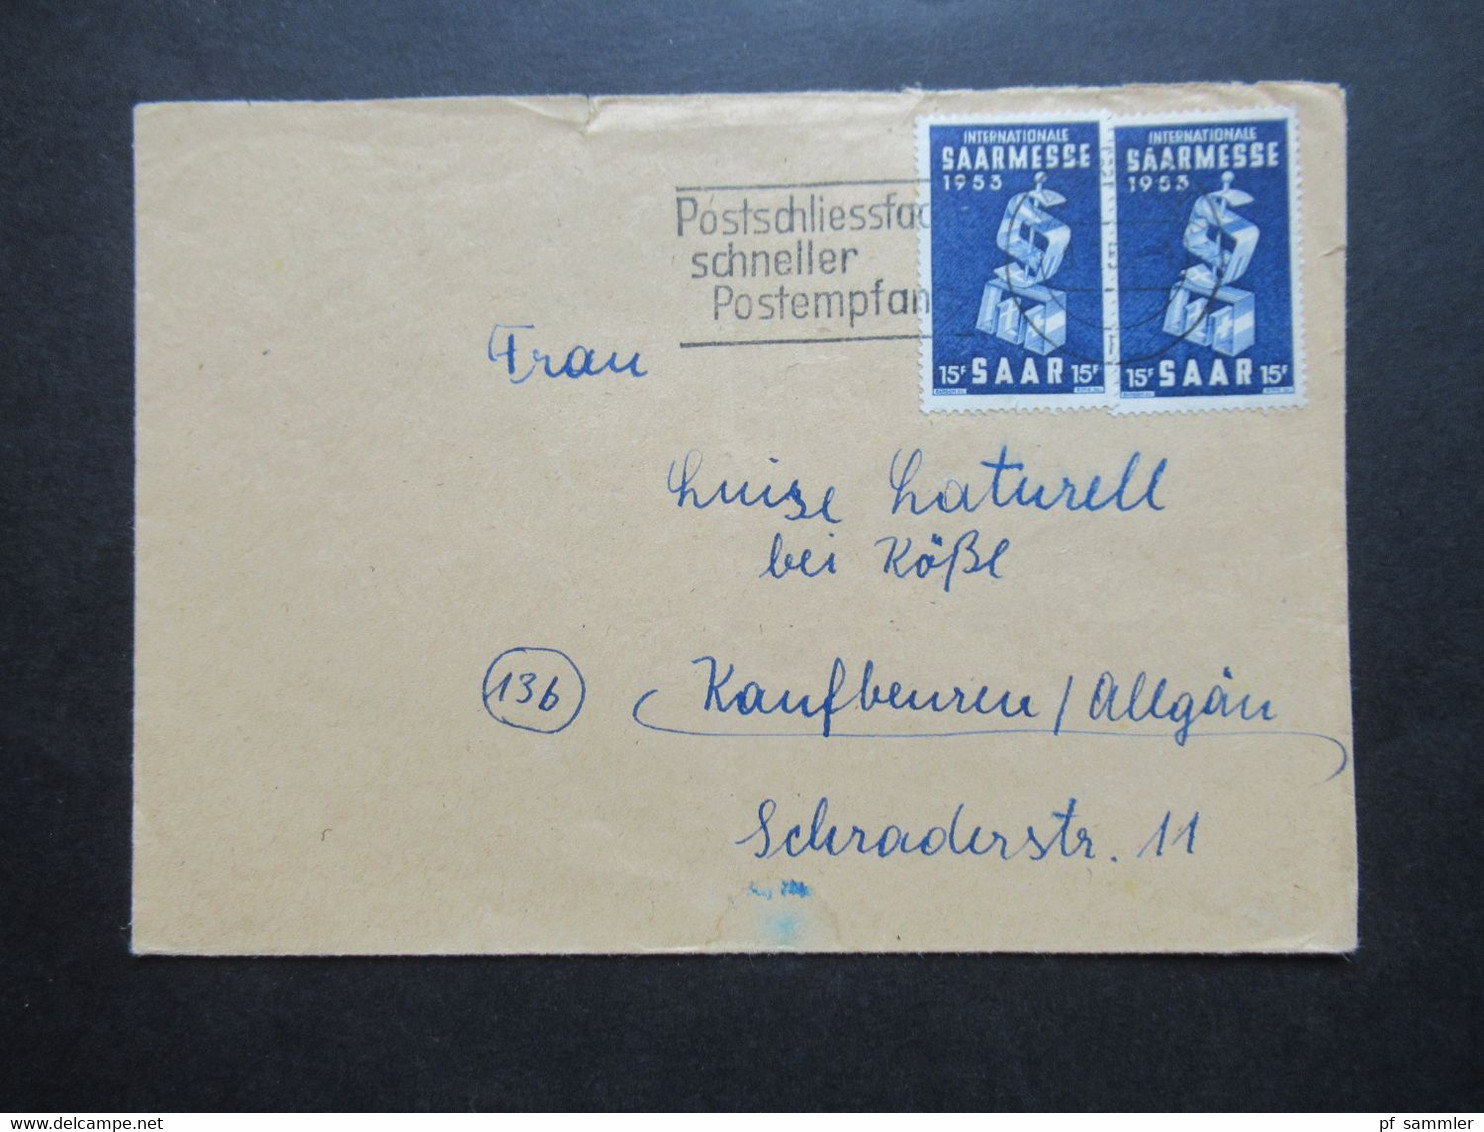 Saarland 1953 Nr.341 (2) MeF Internationale Saarmesse Werbestempel Postschliessfach Schneller Postempfang - Covers & Documents